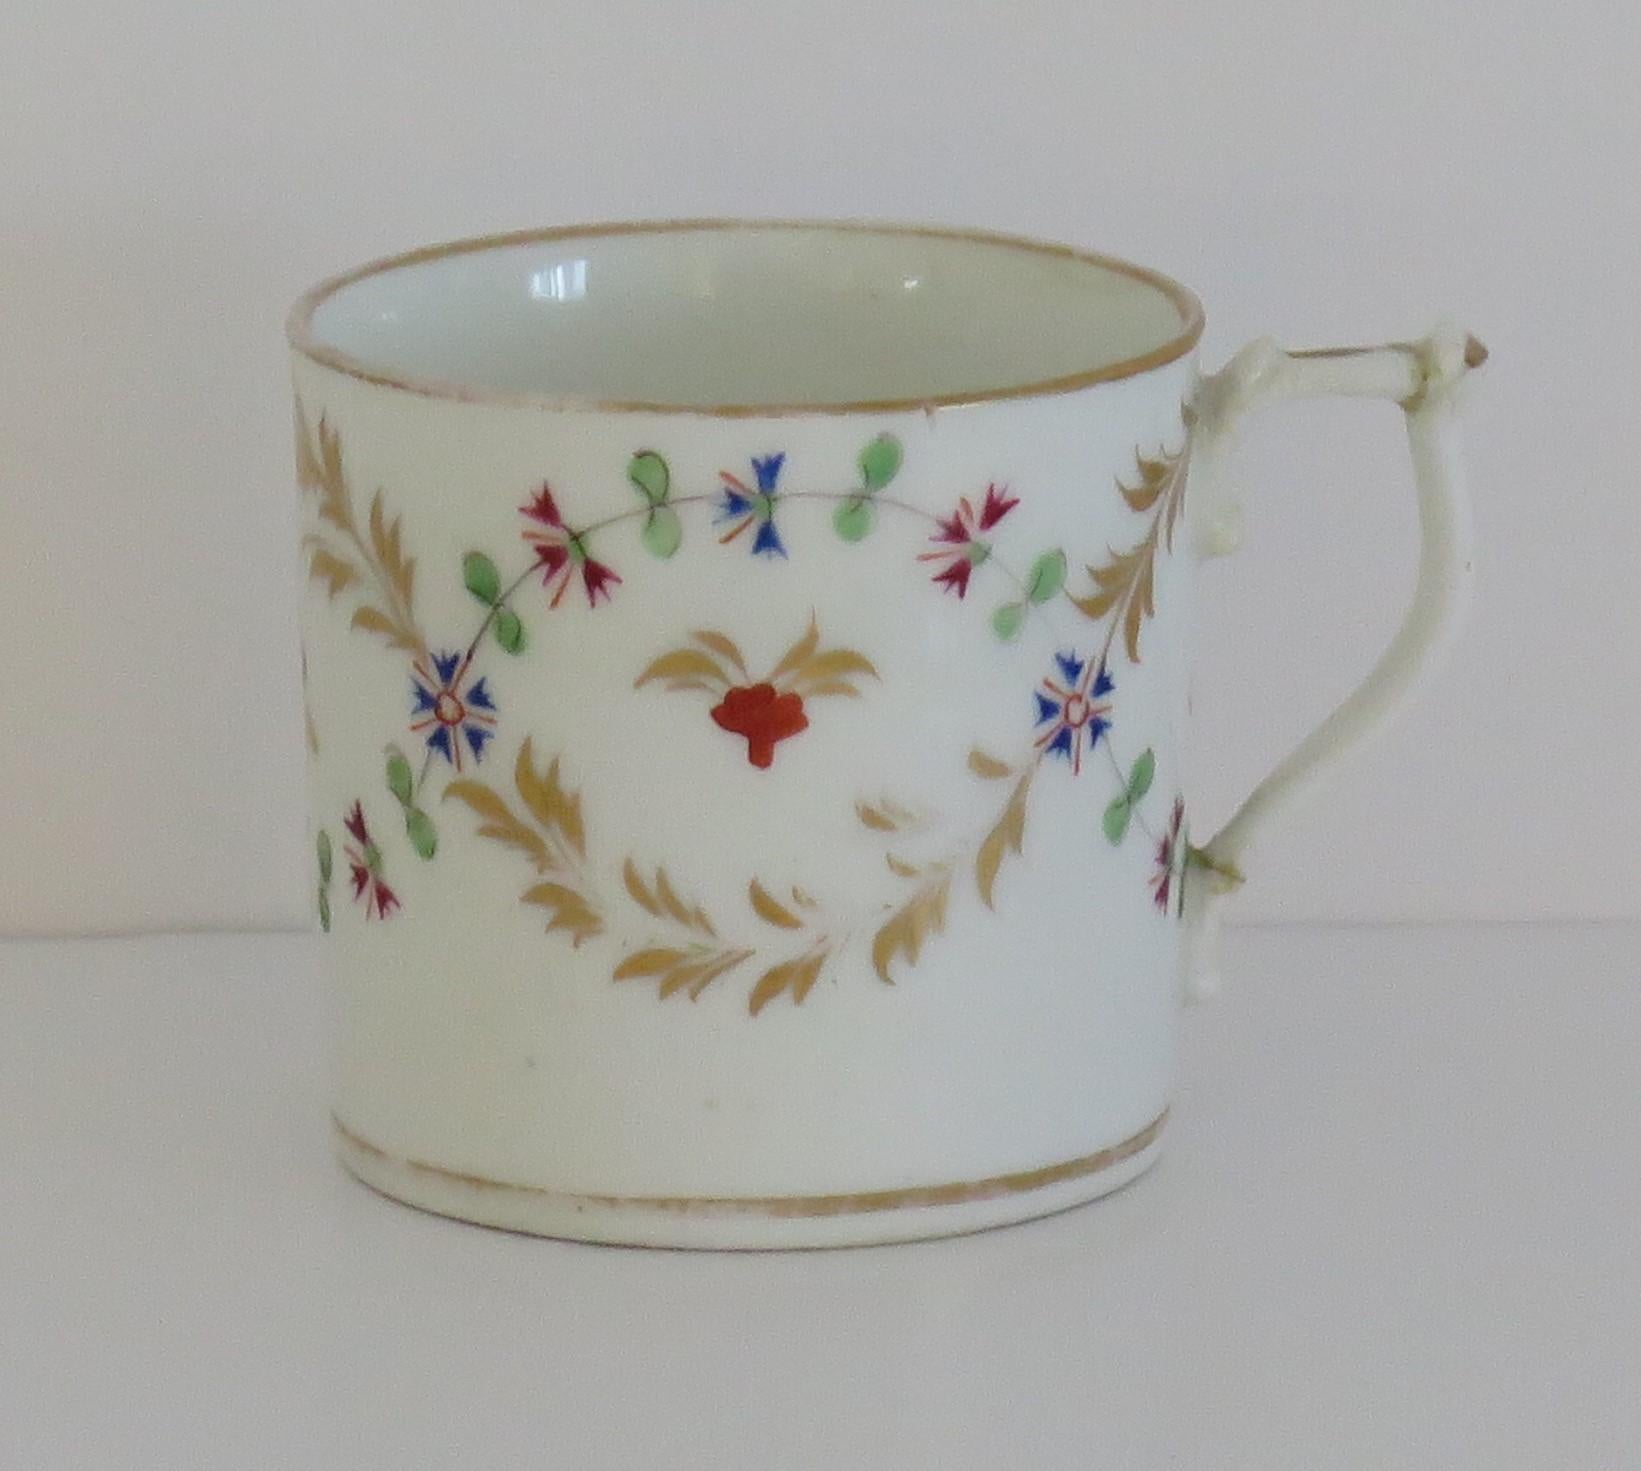 Il s'agit d'une magnifique boîte à café en porcelaine de la manufacture de Derby, fabriquée à la fin de la période géorgienne, au début du XIXe siècle.

Le Can cylindrique se rétrécit légèrement à la base et possède une poignée en forme de